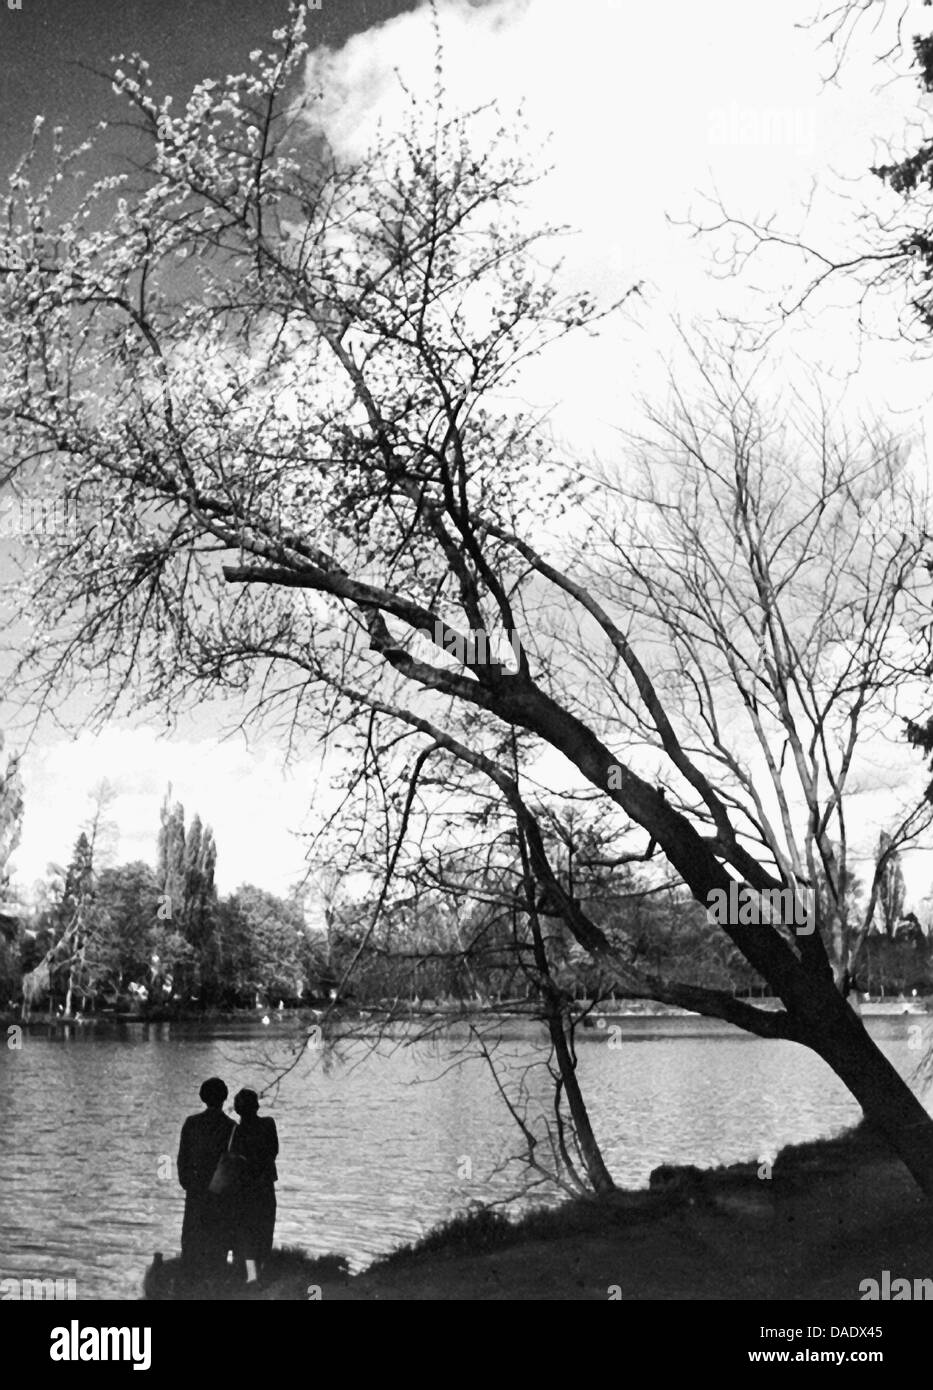 Parigi 1938, matura in un lago. Immagine dal fotografo Fred Stein (1909-1967) che emigrarono 1933 dalla Germania nazista per la Francia e infine negli Stati Uniti. Foto Stock